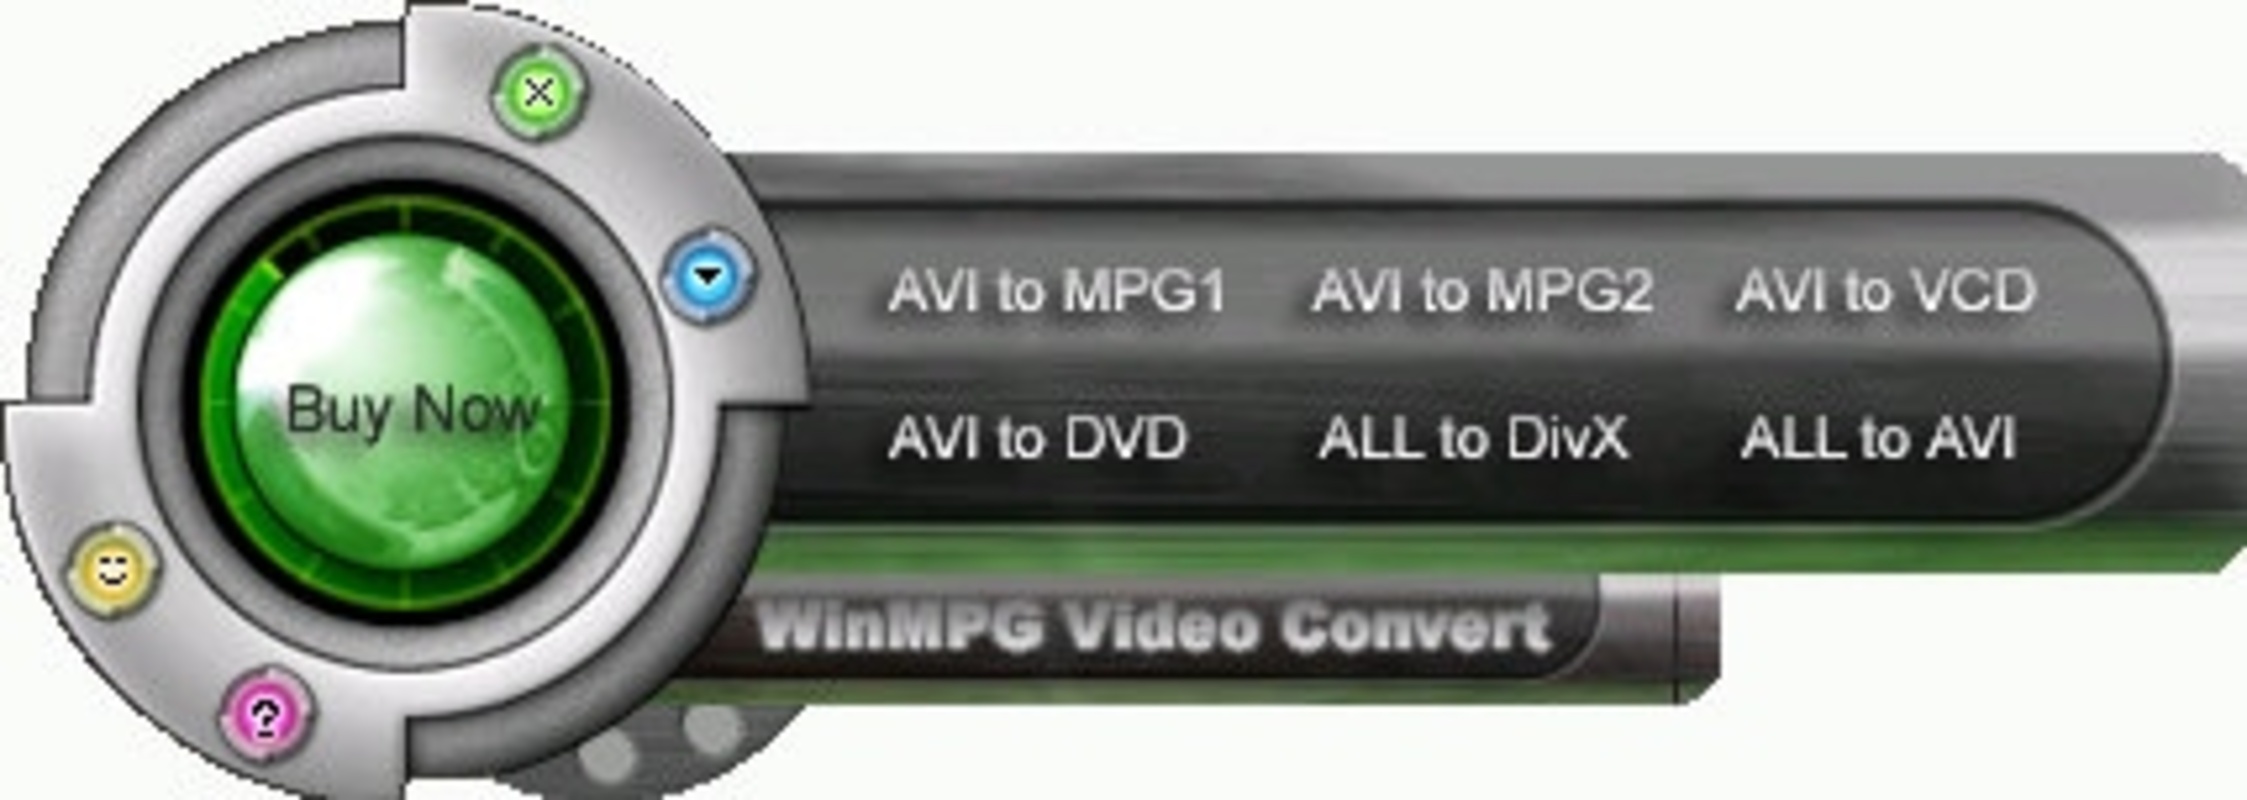 WinMPG Video Convert 9.3.5 feature